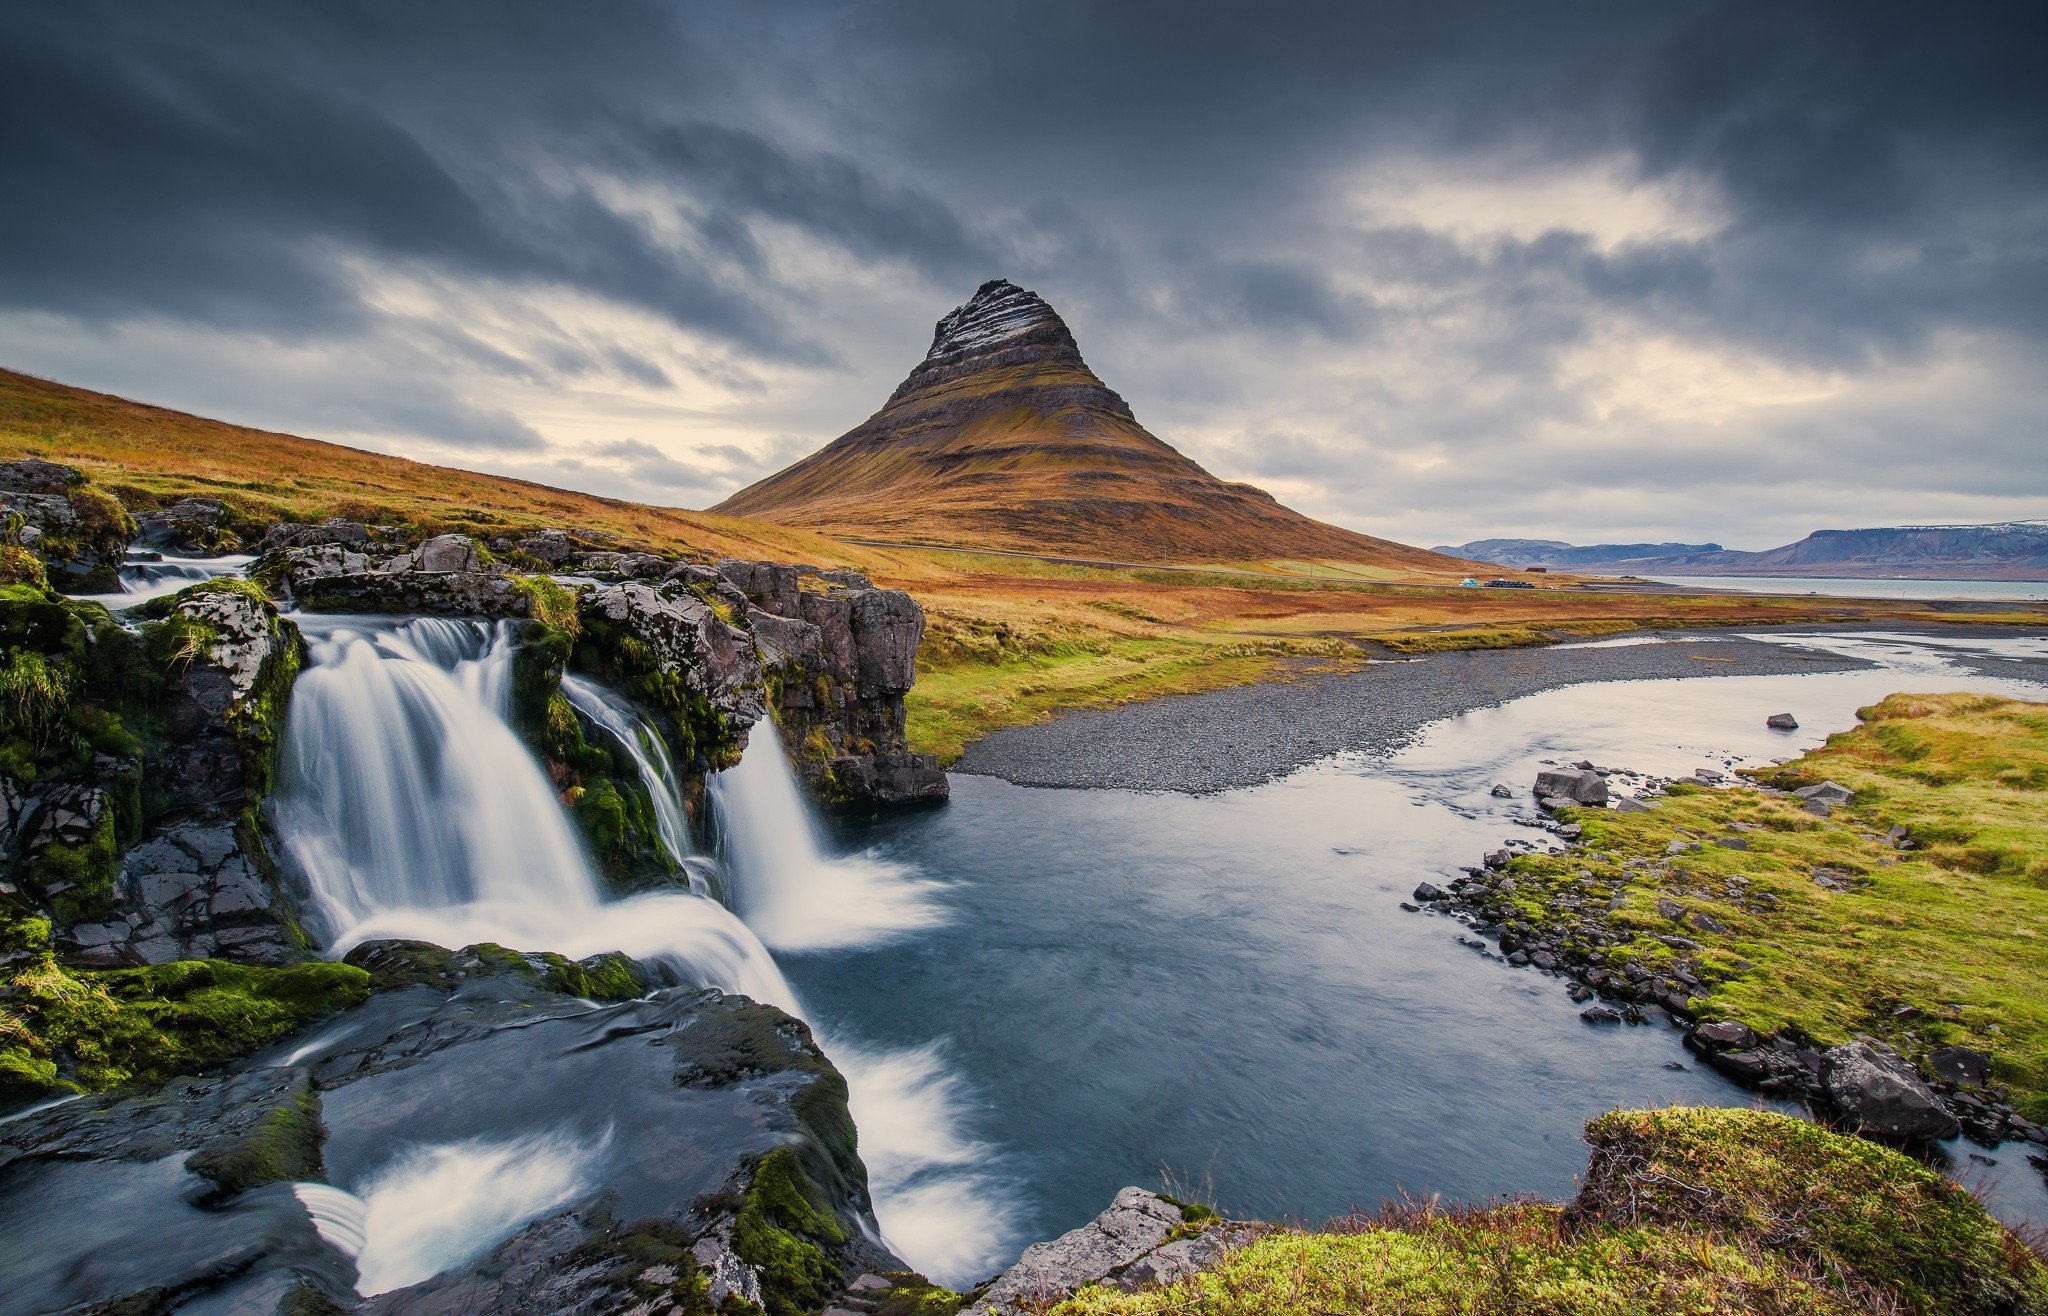 Hình nền đổ nước Iceland Kirkjufell khiến màn hình máy tính của bạn trở nên sống động và đặc sắc hơn với khung cảnh của những thác nước tuyệt đẹp cùng với ngọn núi nhiều tầng lớp. Bạn sẽ nhận ra rằng, hình nền này không chỉ để trang trí, mà còn đem lại cho bạn những phút giây thư giãn tuyệt vời.